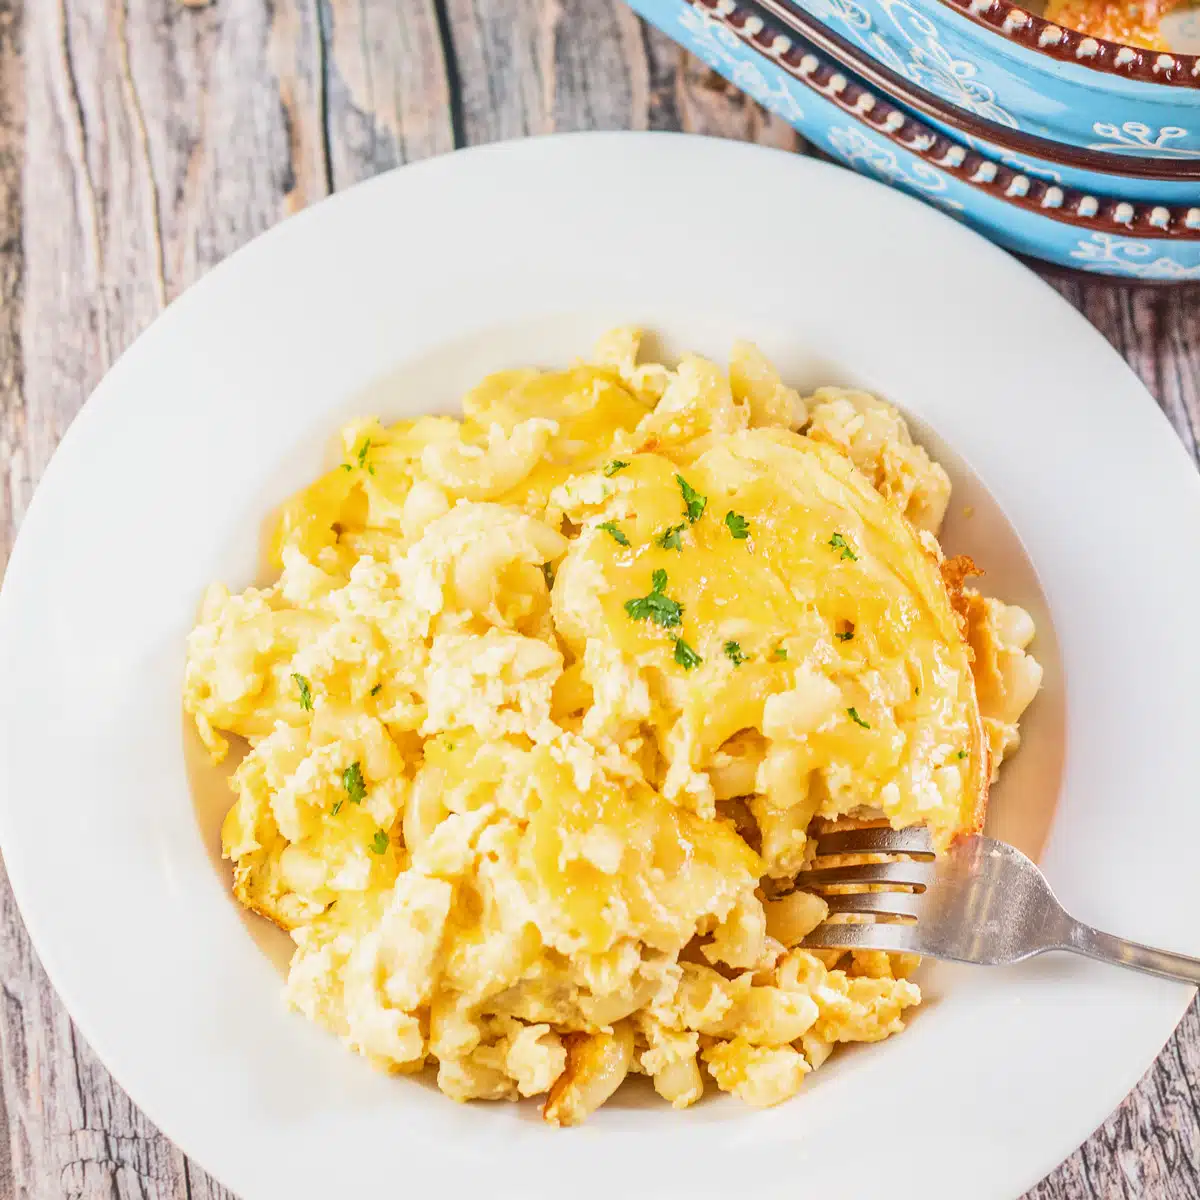 La mejor receta de macarrones con queso de Paula Deen con mucho queso, huevos, crema agria y horneado a la perfección.